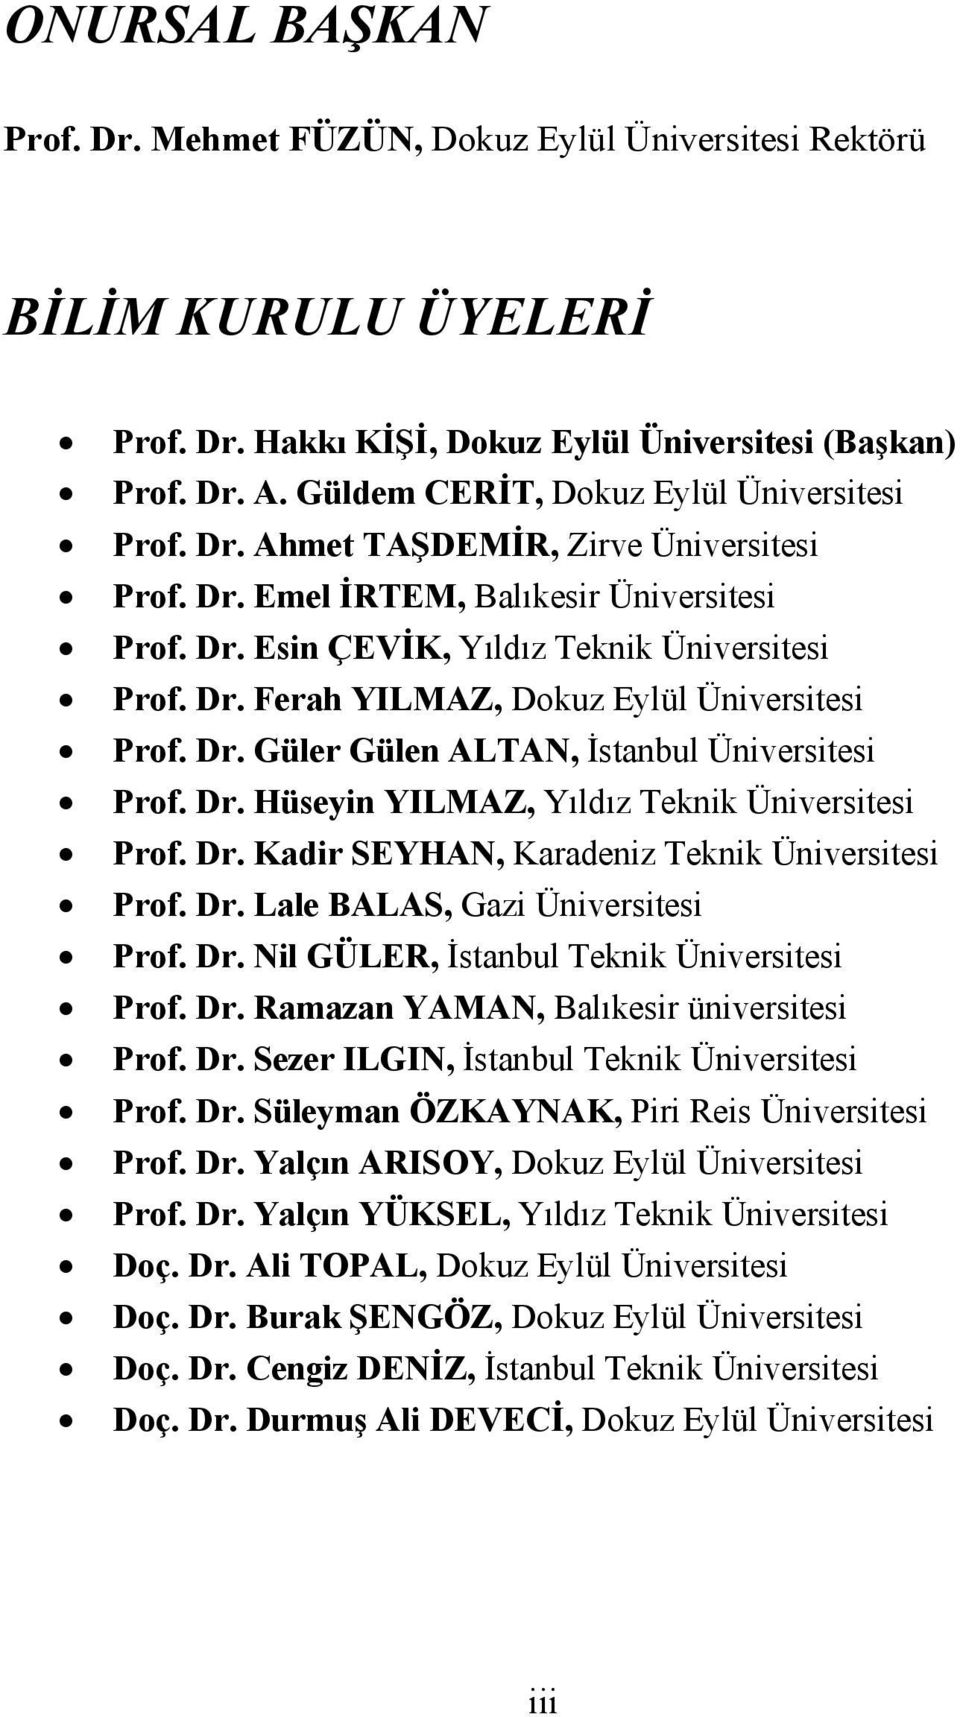 Dr. Güler Gülen ALTAN, İstanbul Üniversitesi Prof. Dr. Hüseyin YILMAZ, Yıldız Teknik Üniversitesi Prof. Dr. Kadir SEYHAN, Karadeniz Teknik Üniversitesi Prof. Dr. Lale BALAS, Gazi Üniversitesi Prof.